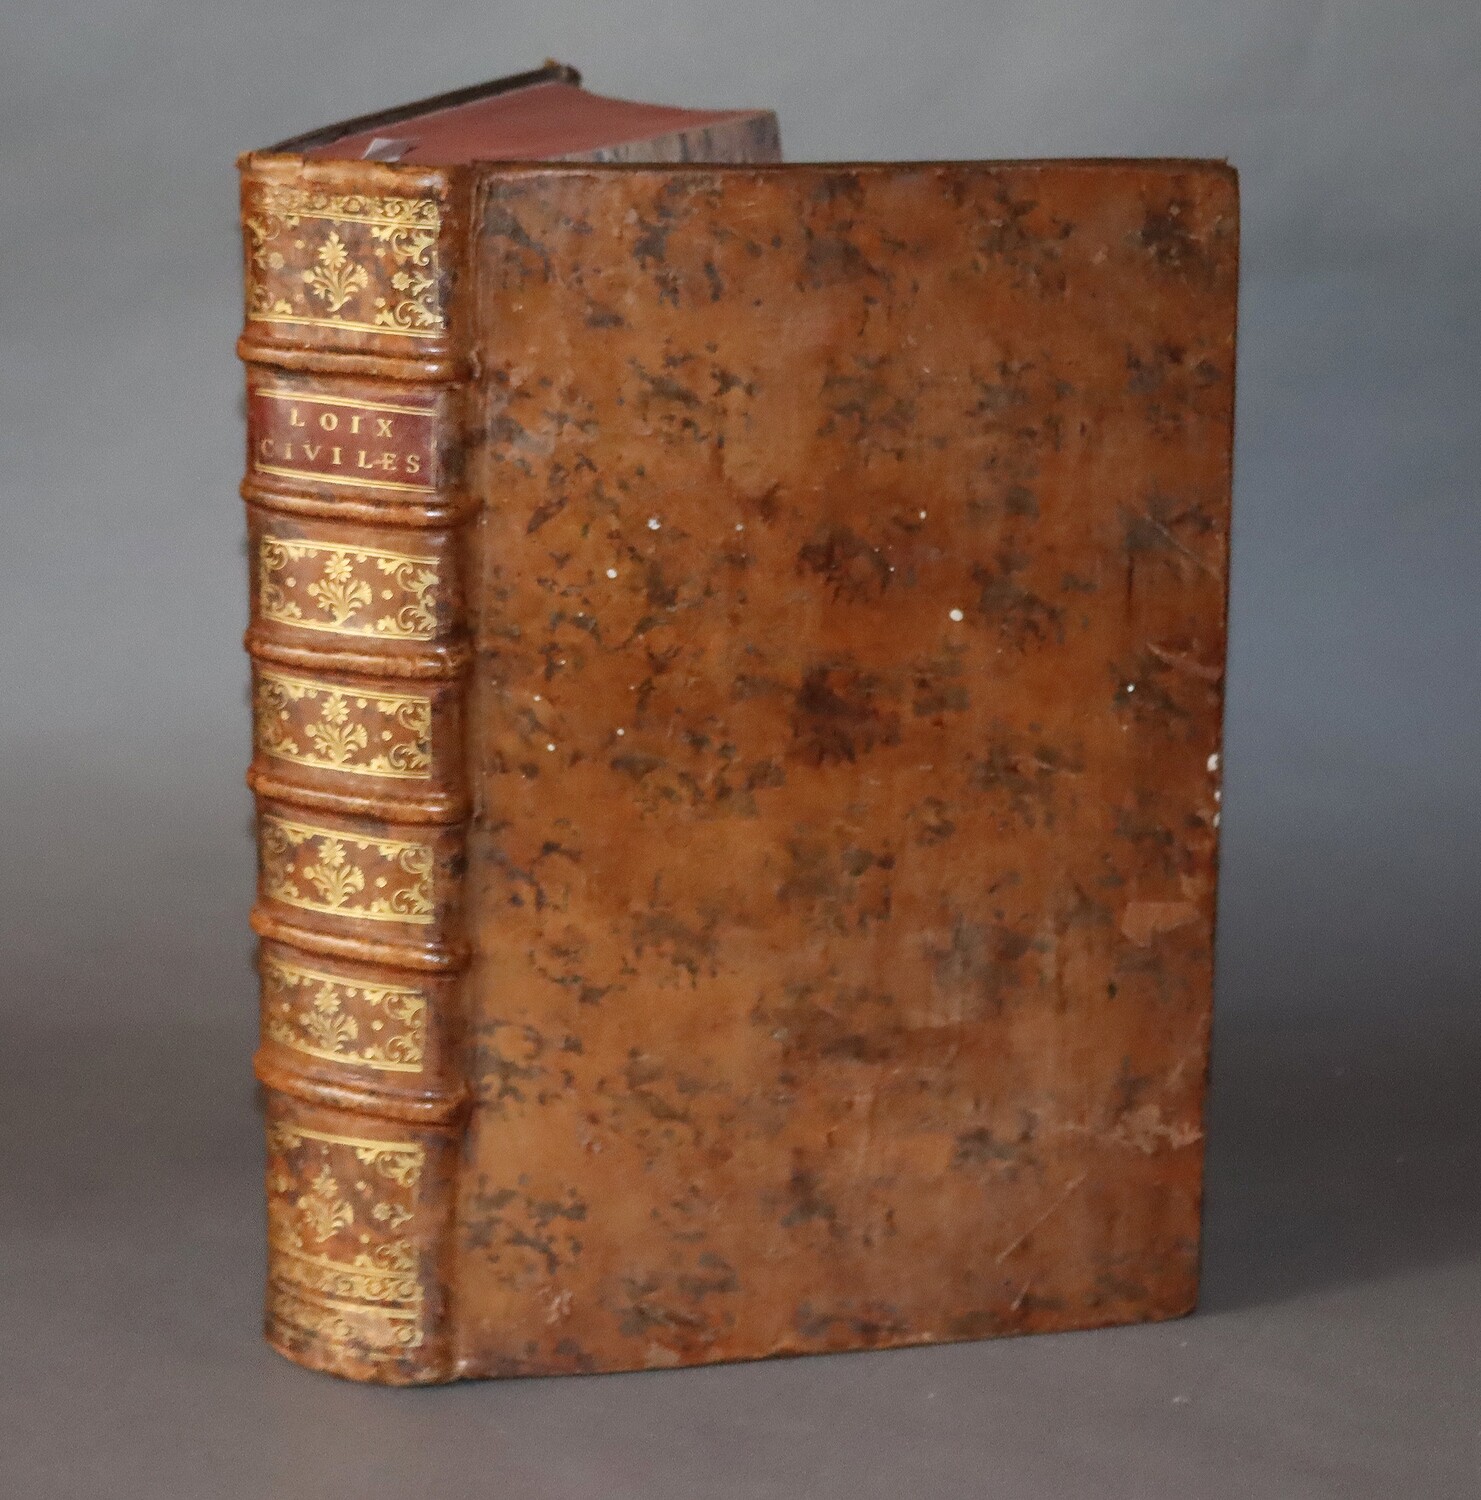 DOMAT. Les Loix civiles dans leur ordre naturel...- 1767.- 2 tomes reliés en un volume in-folio.